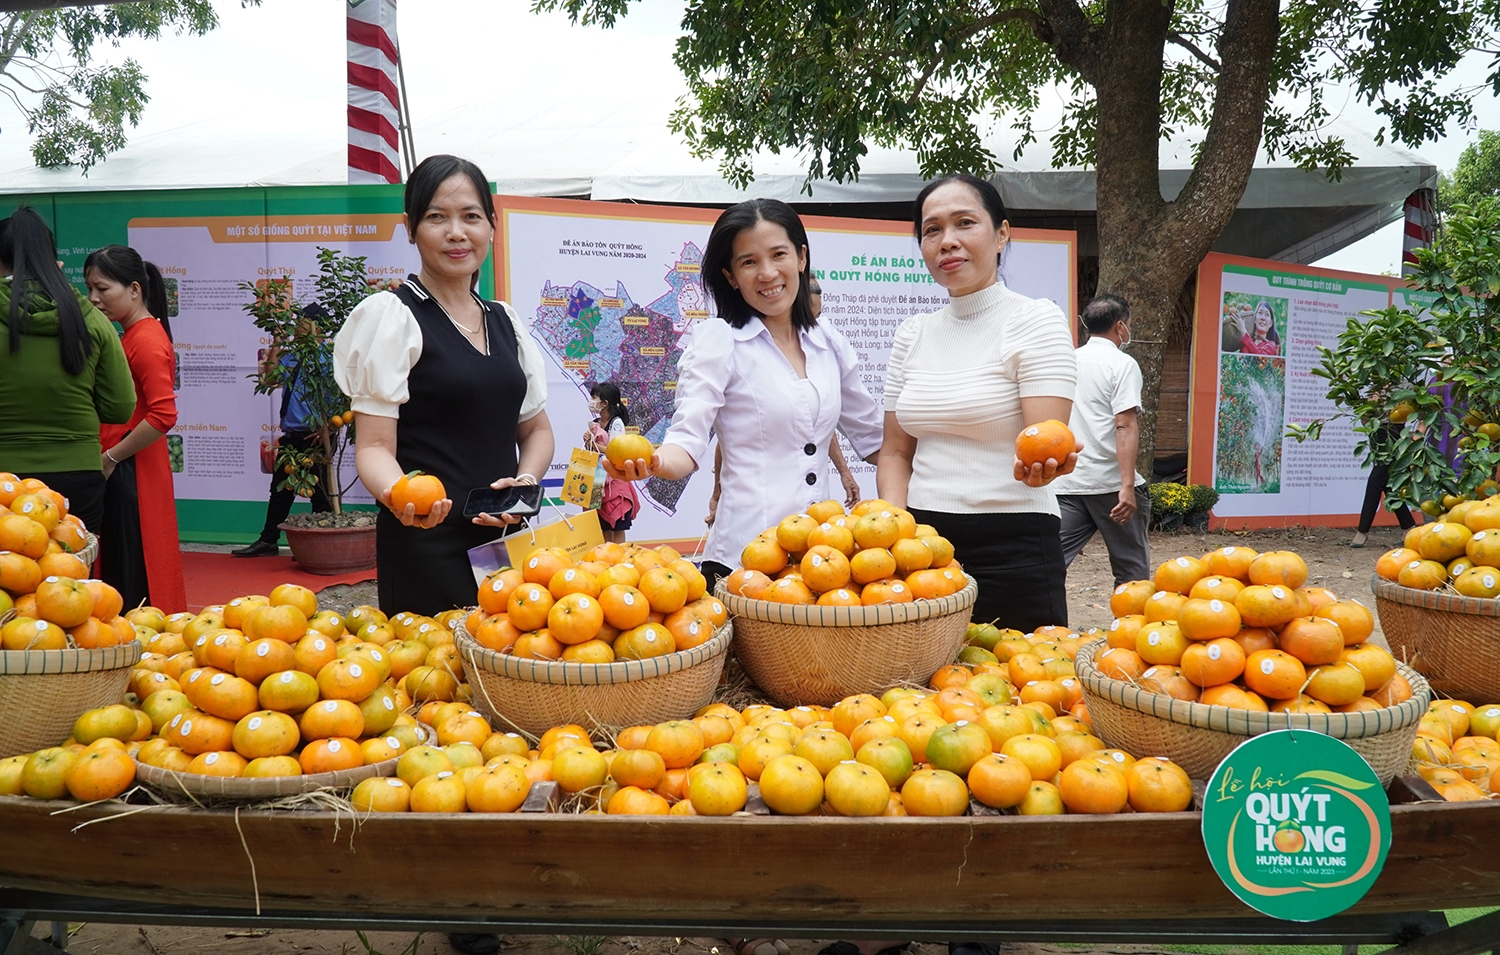 Những hoạt động quảng bá trái quýt hồng Lai Vung tại Lễ hội